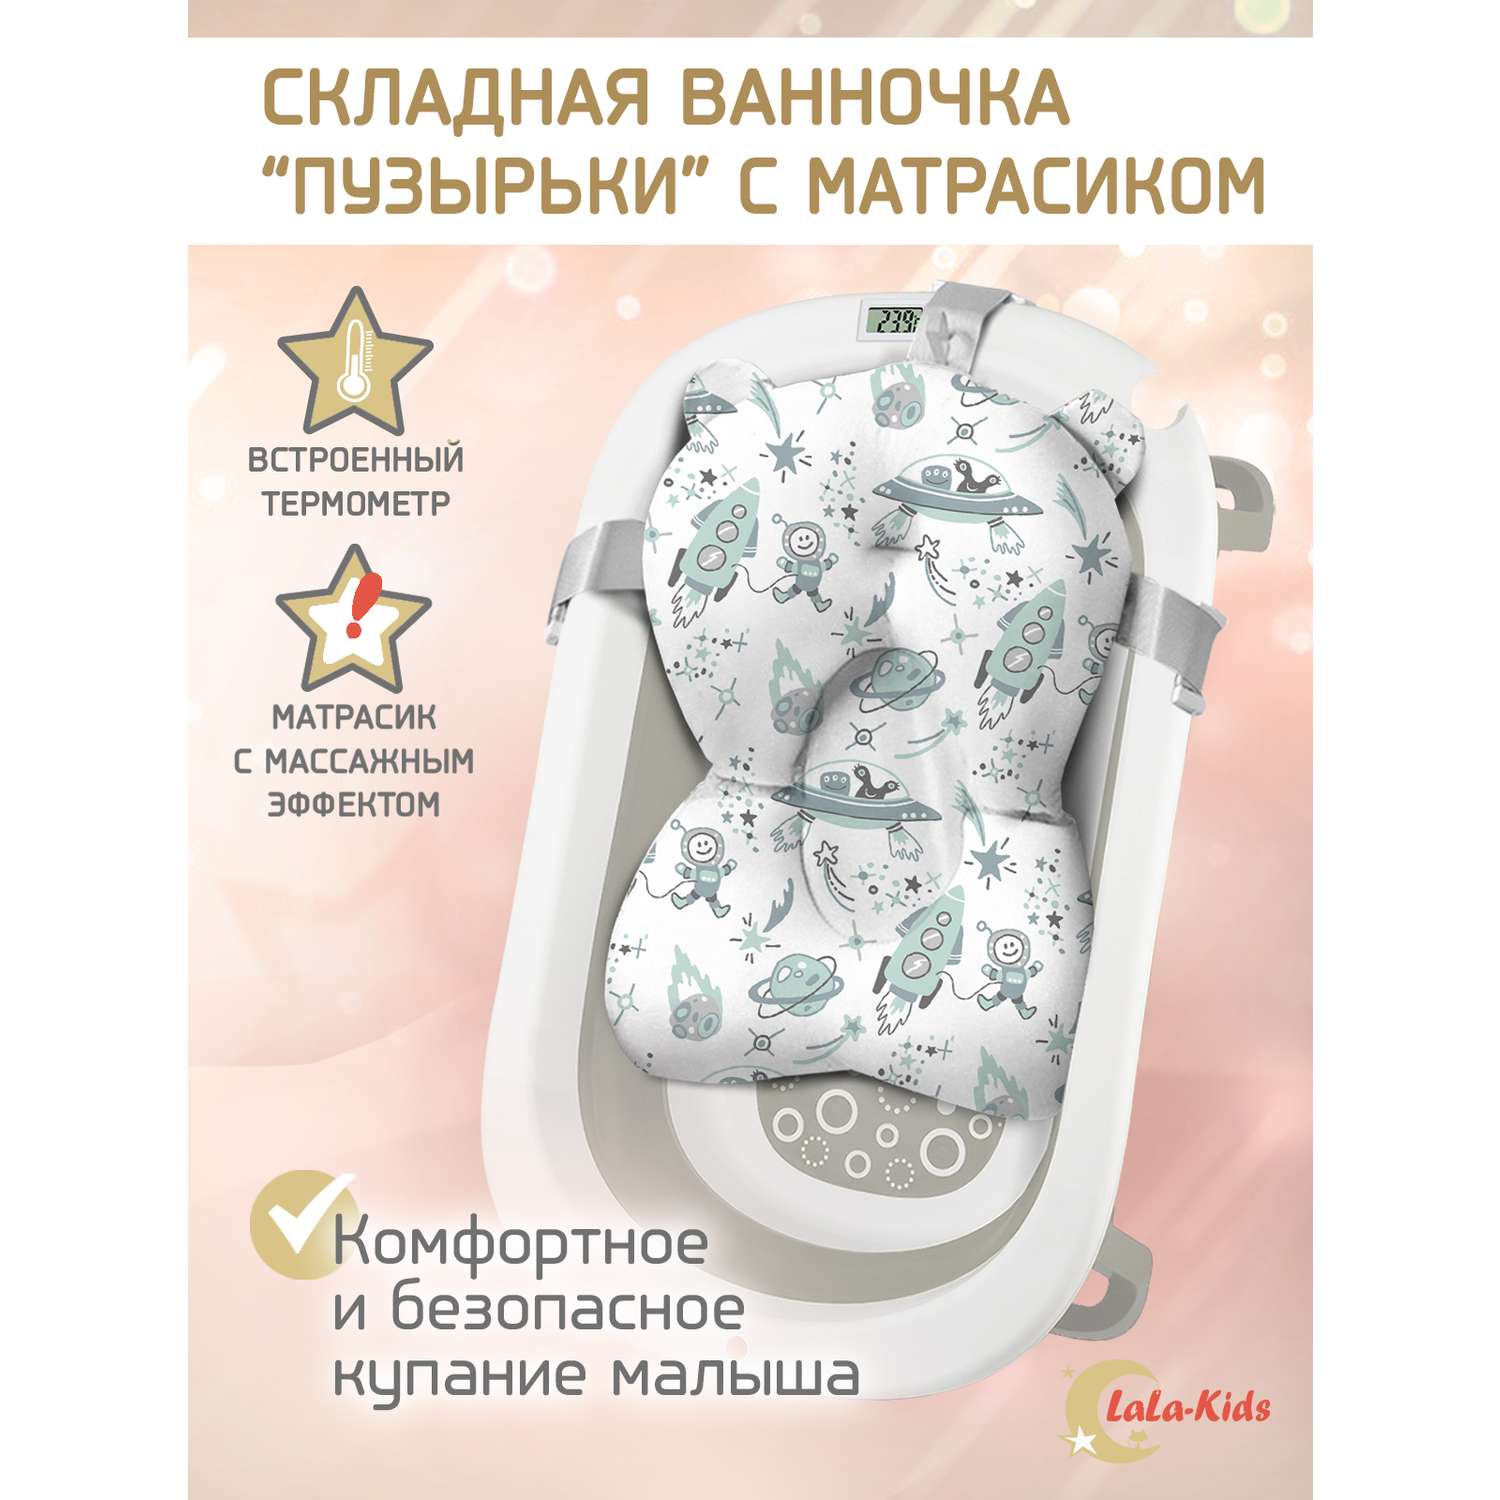 Складная ванночка LaLa-Kids для купания новорожденных с термометром и матрасиком в комплекте - фото 1